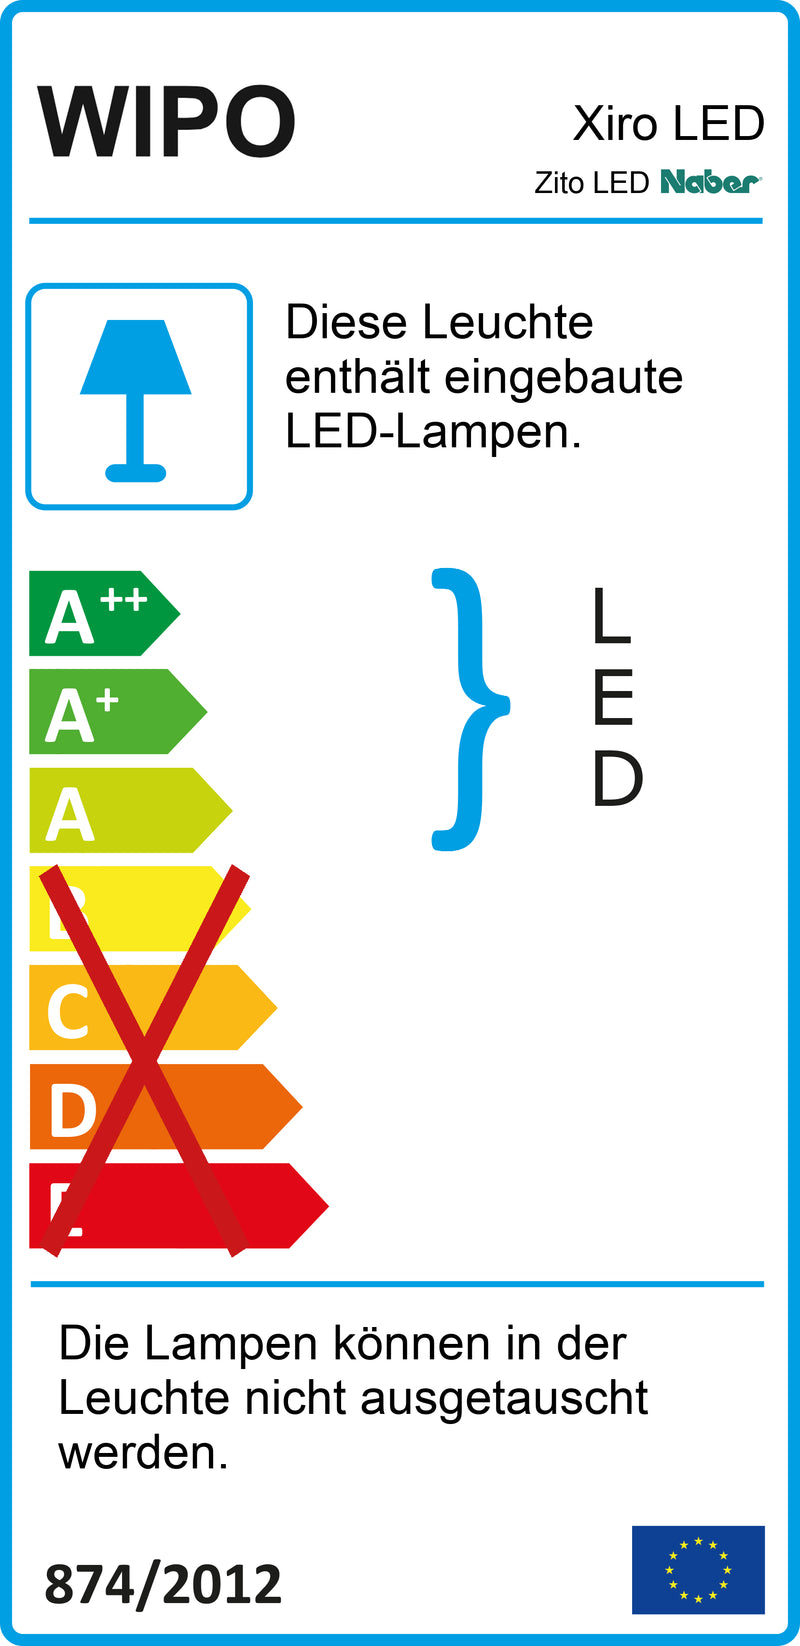 E-Label zu Zeichnung zu Zito LED als Variante L 900 mm, 13 W, edelstahlfarbig von Naber GmbH in der Kategorie Lichttechnik in Österreich auf conceptshop.at